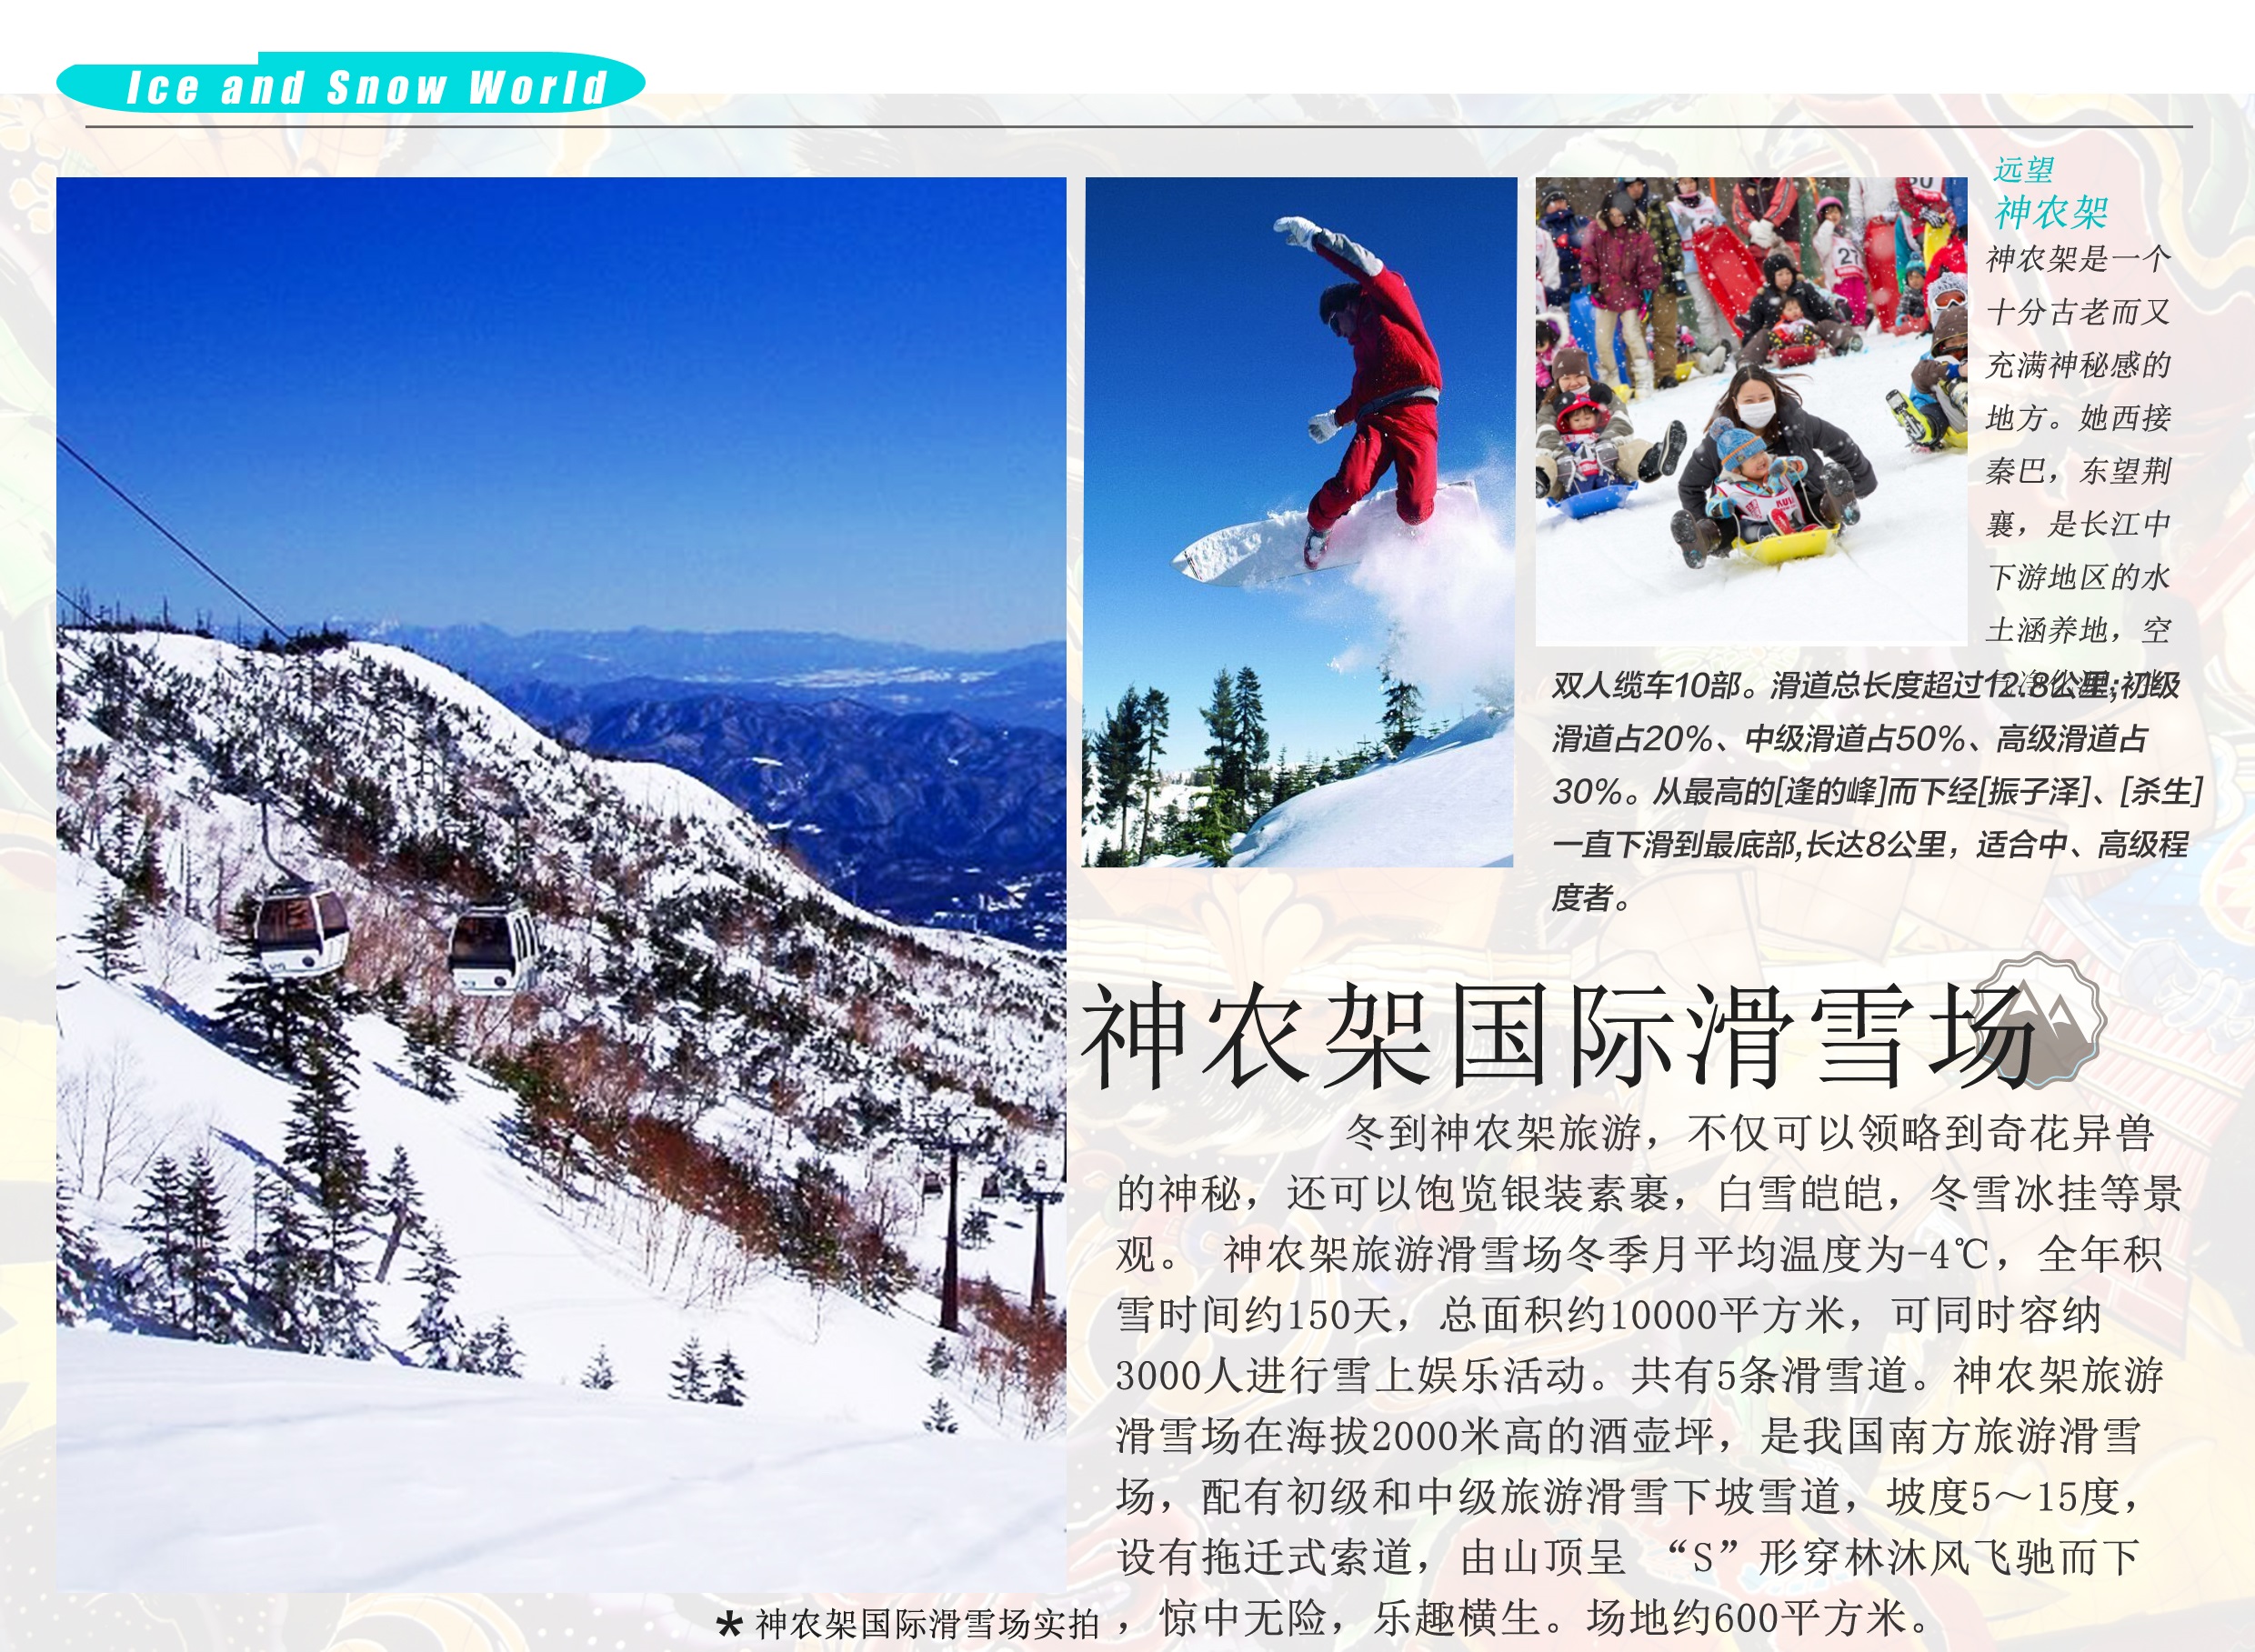 武汉旅行社到神农架滑雪报价 武汉到神农架滑雪多少钱 神农架国际滑雪、两坝一峡 双动3日游